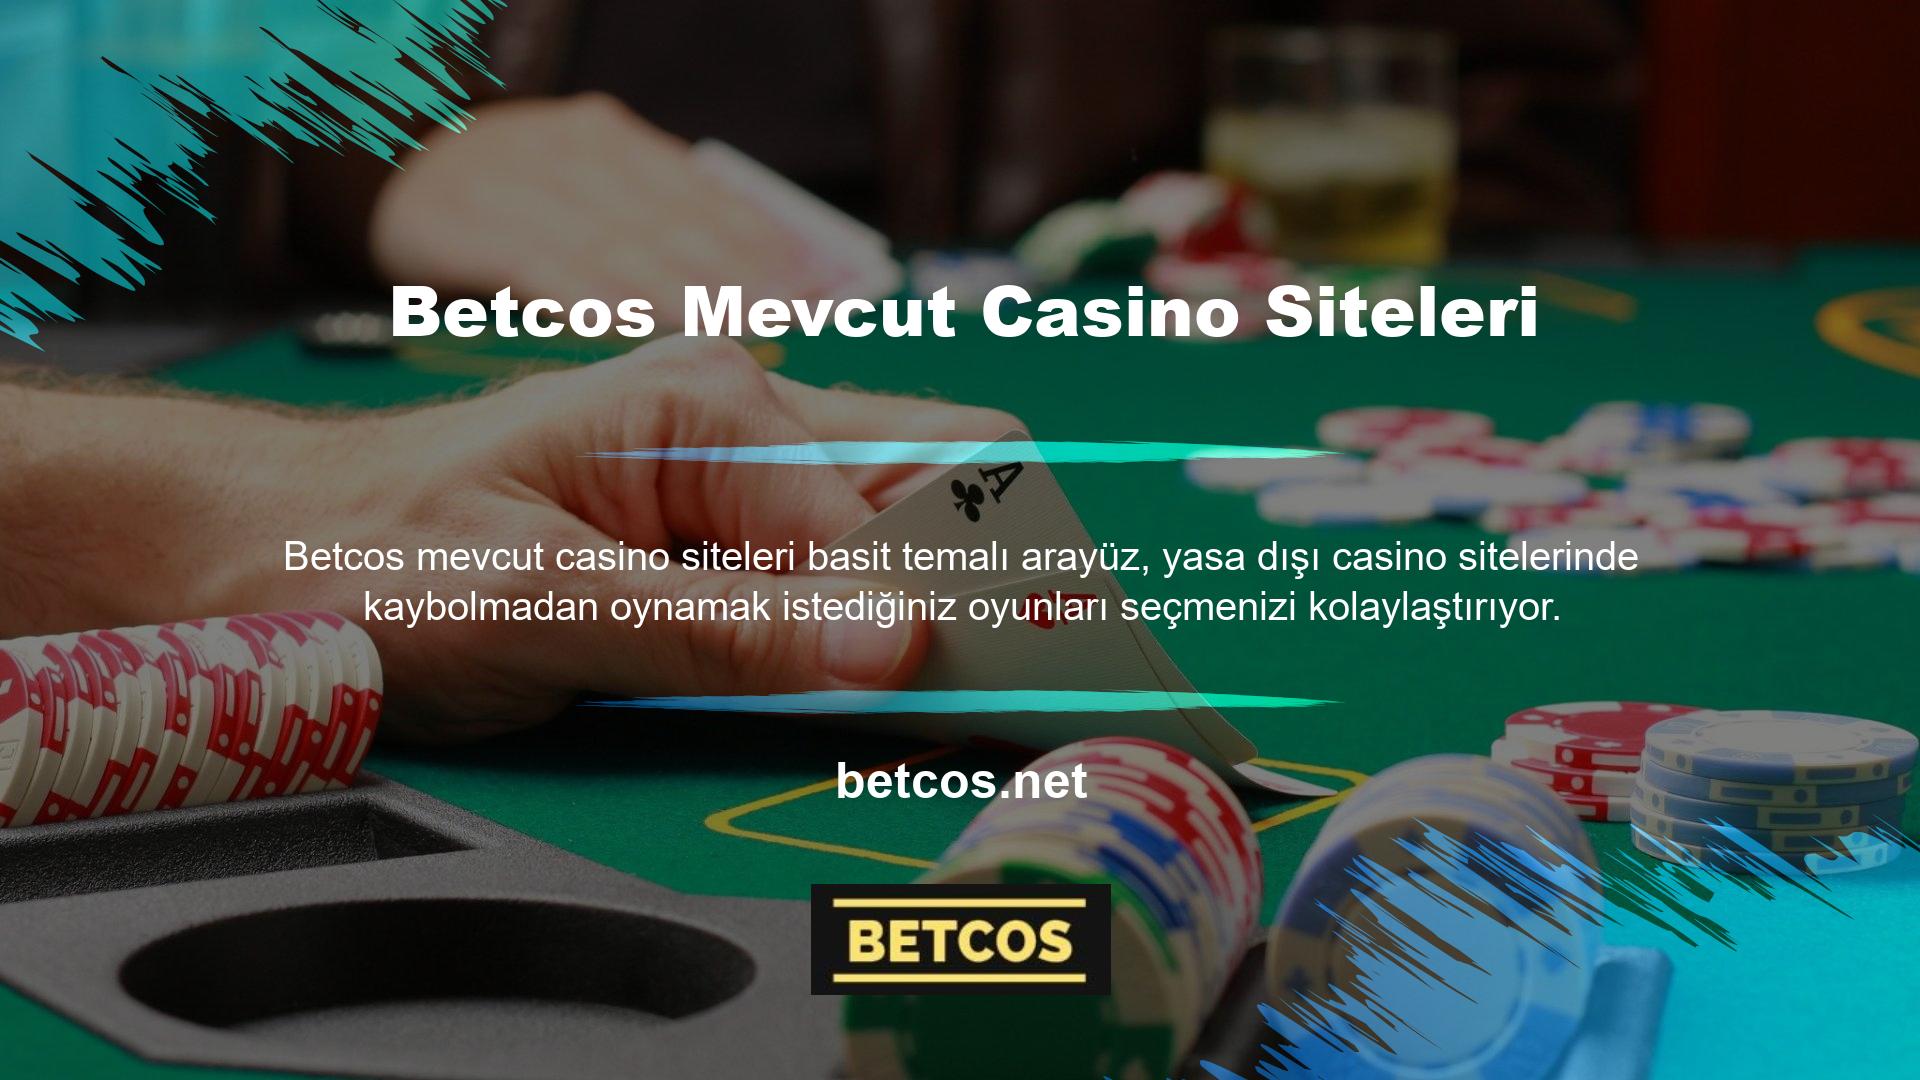 Bununla birlikte, bazı kullanıcılar, basit kullanıcı arayüzlerine sahip casino sitelerinin daha az oyun seçeneğine sahip olduğuna inanmaktadır